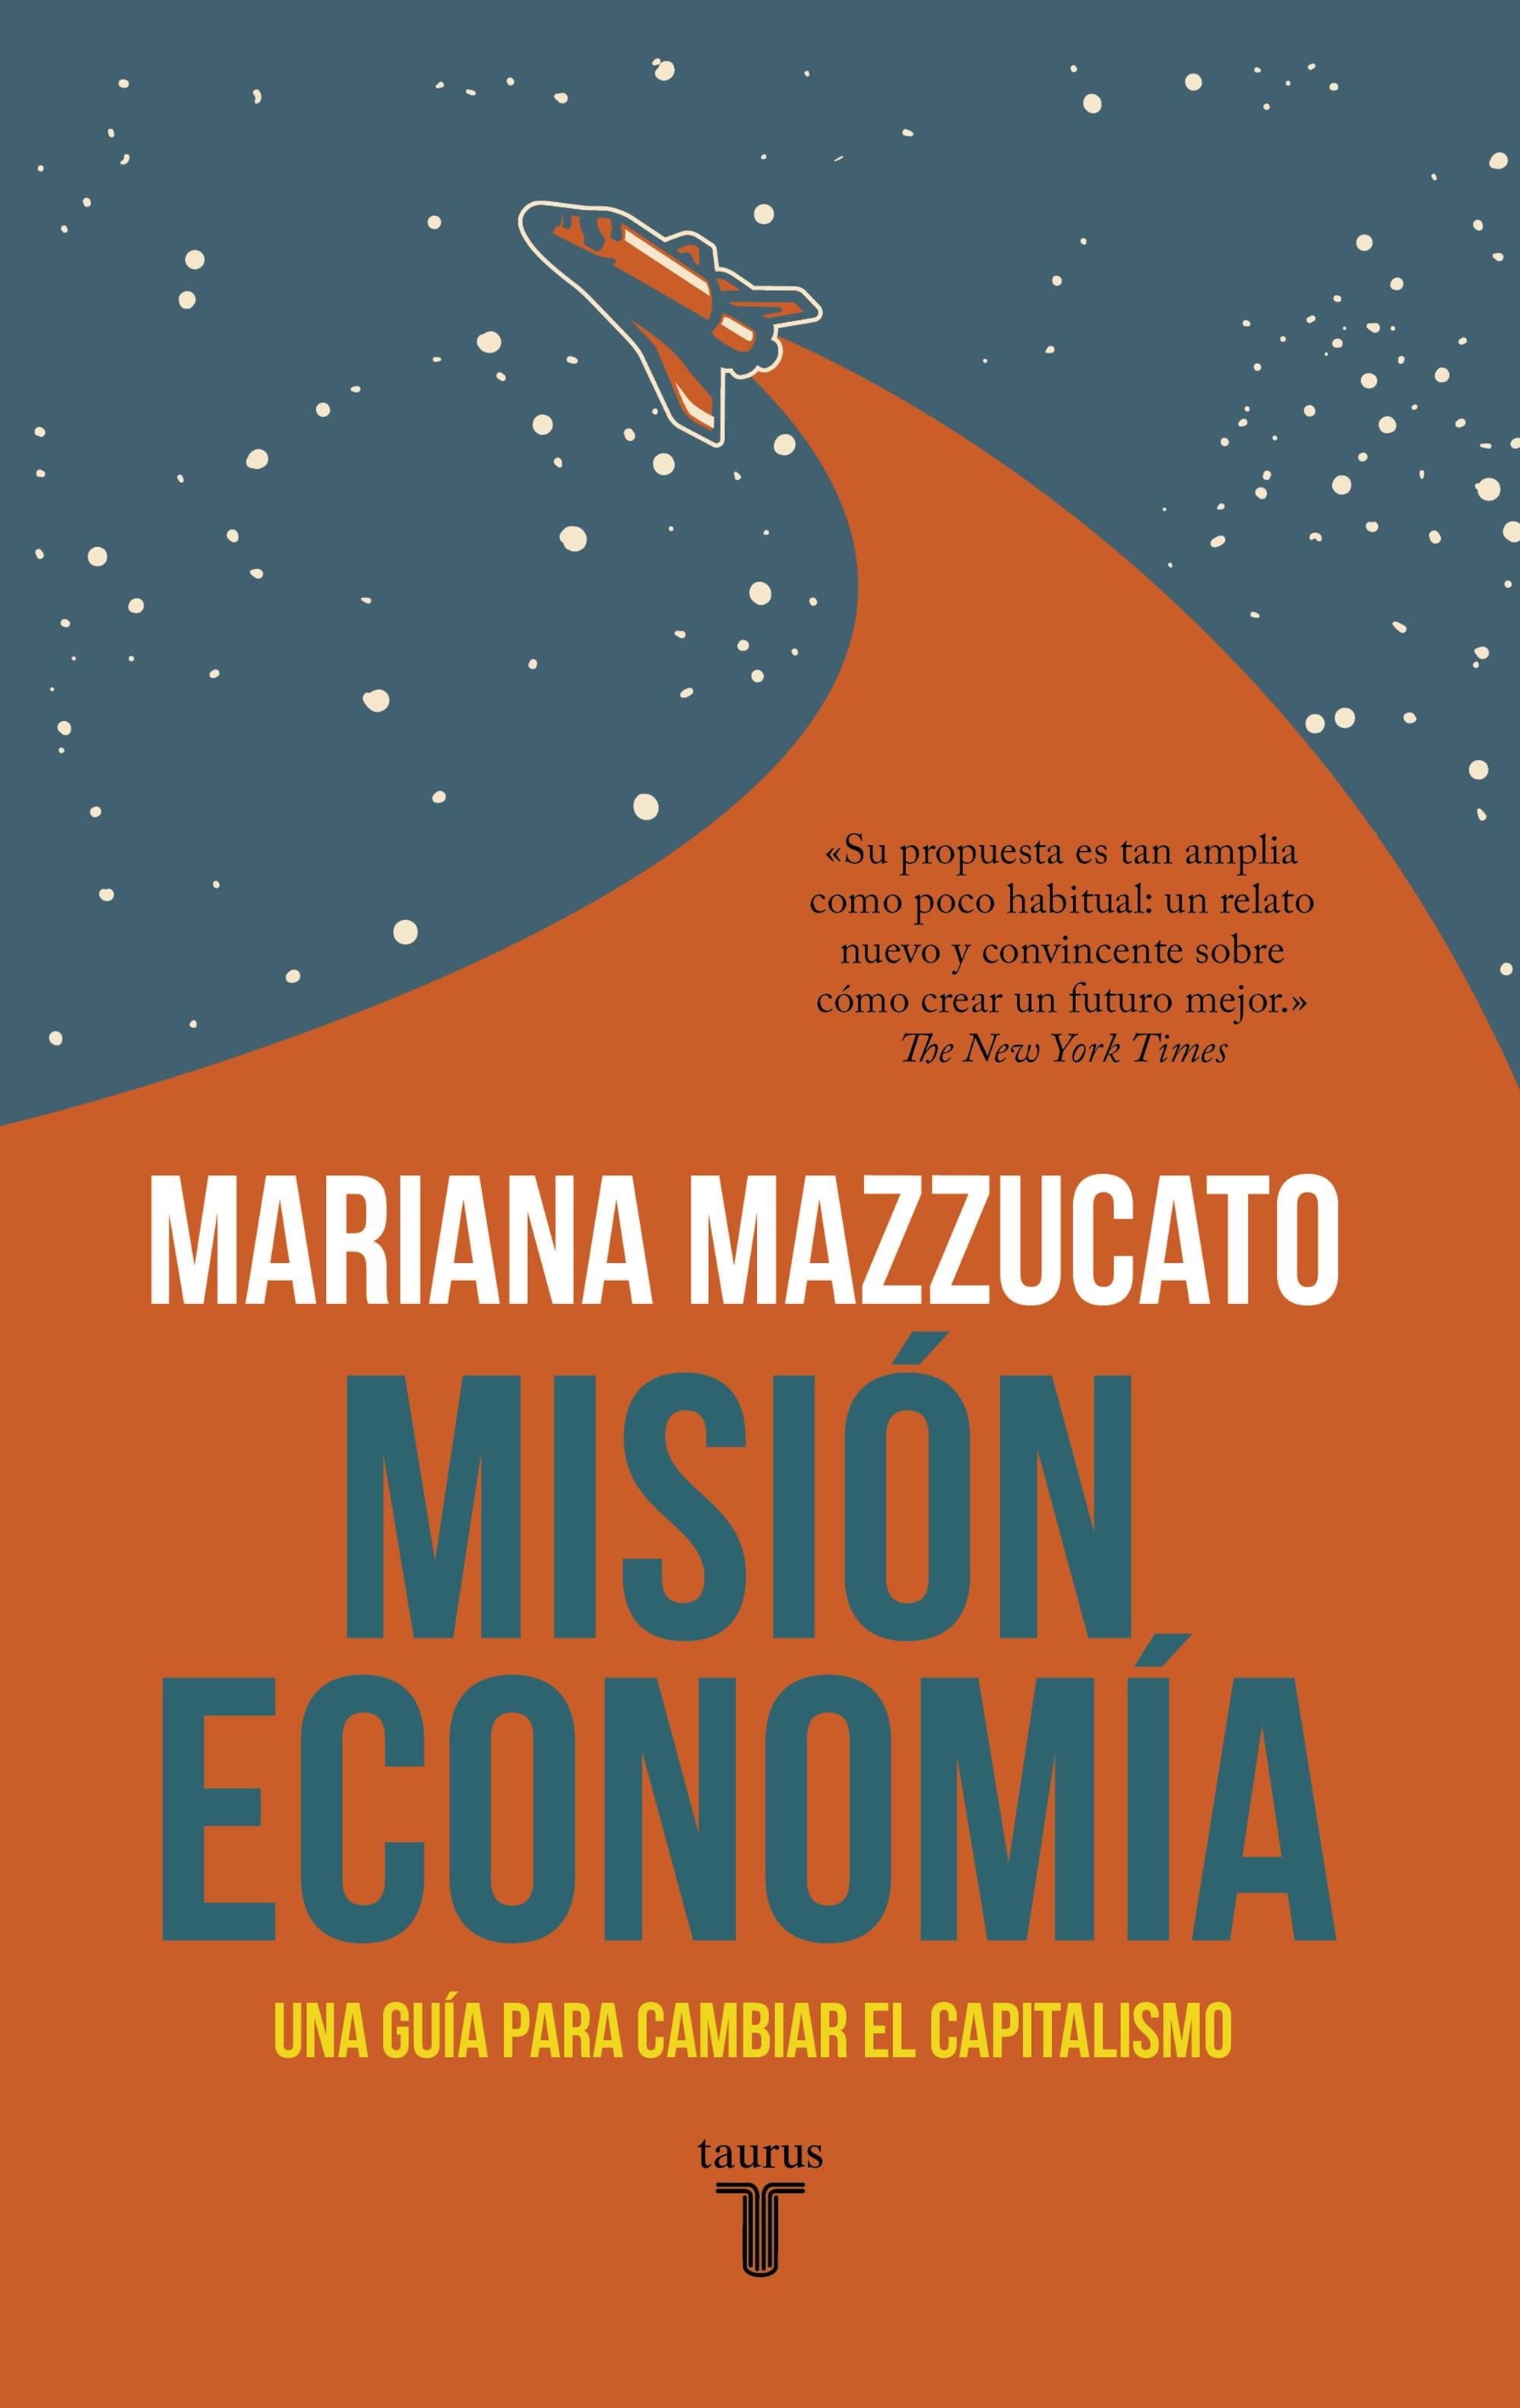 Misión economía "Una guía para cambiar el capitalismo"